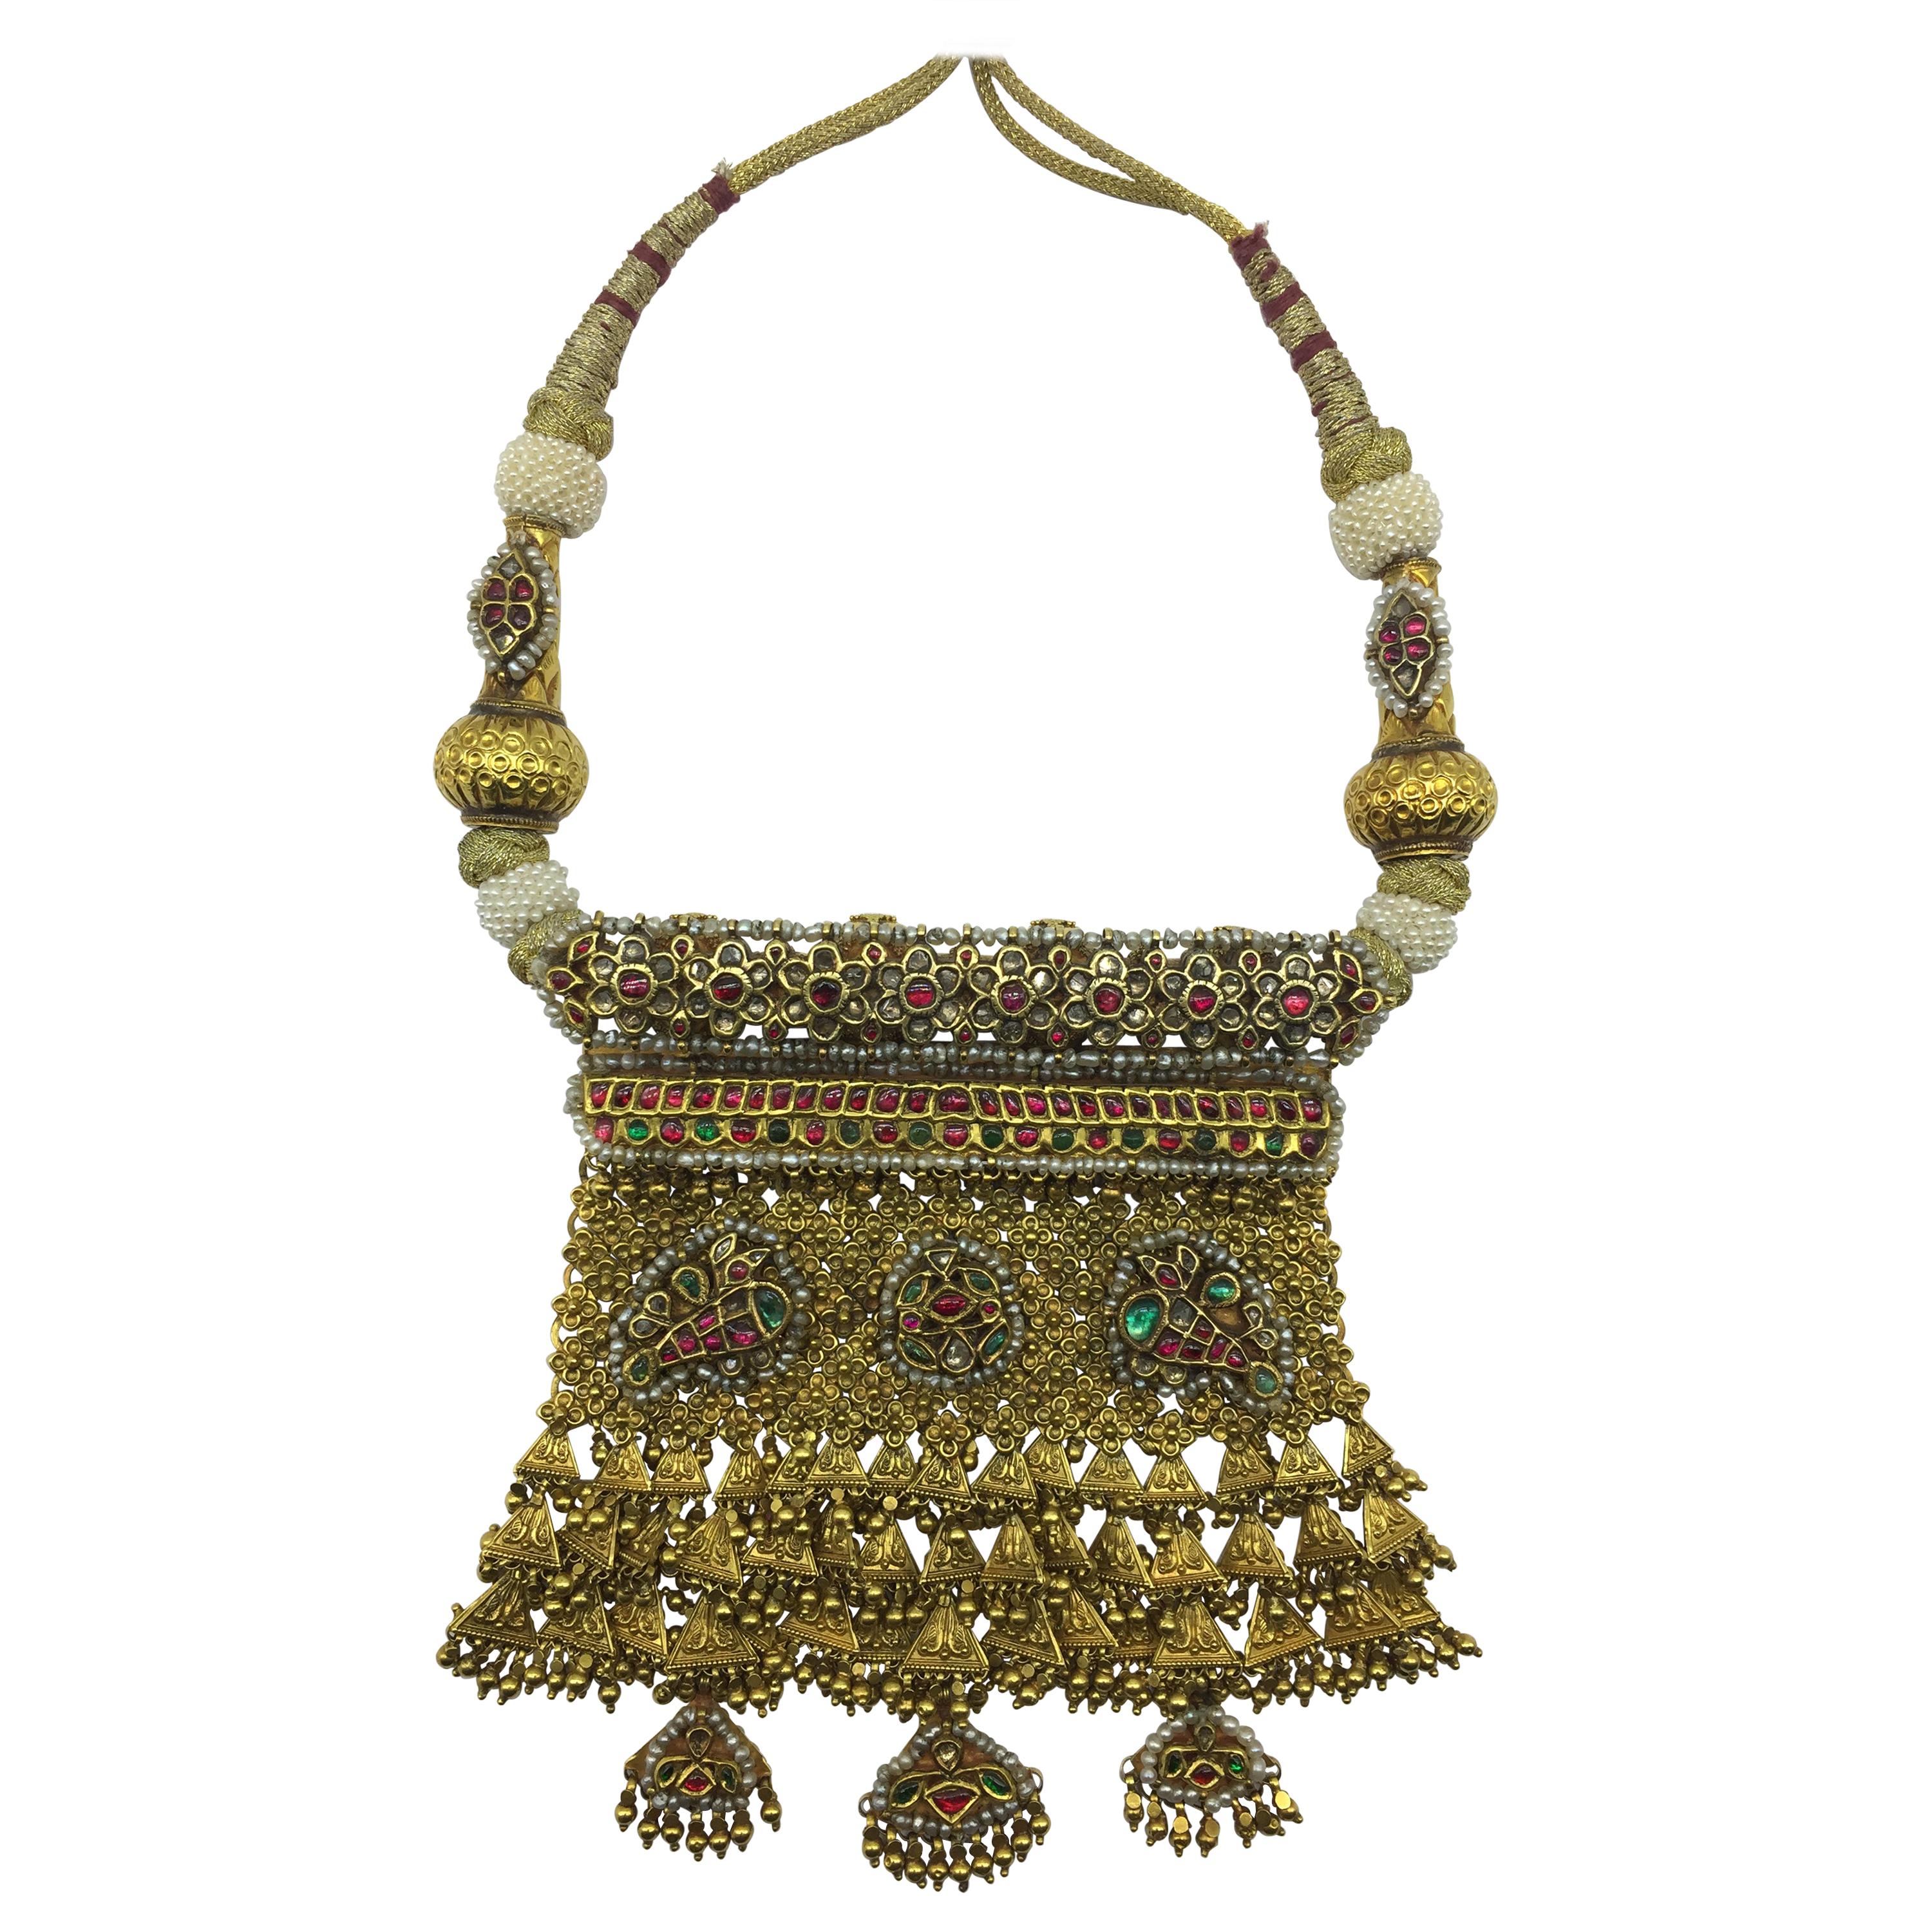 Collier artisanal indien en or 22 carats, diamants, perles naturelles, émeraudes et rubis